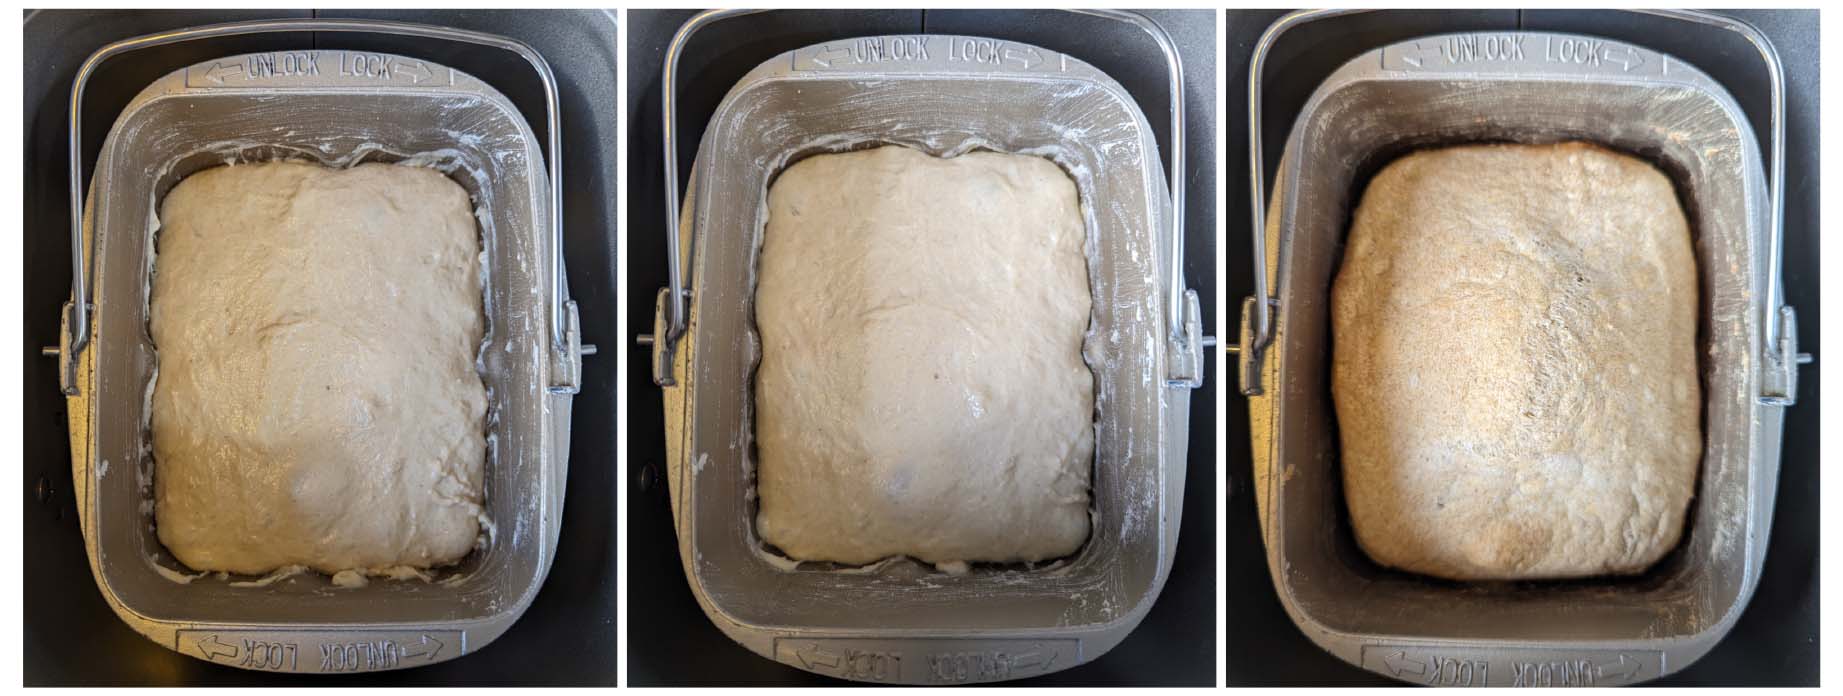 Bake the dough